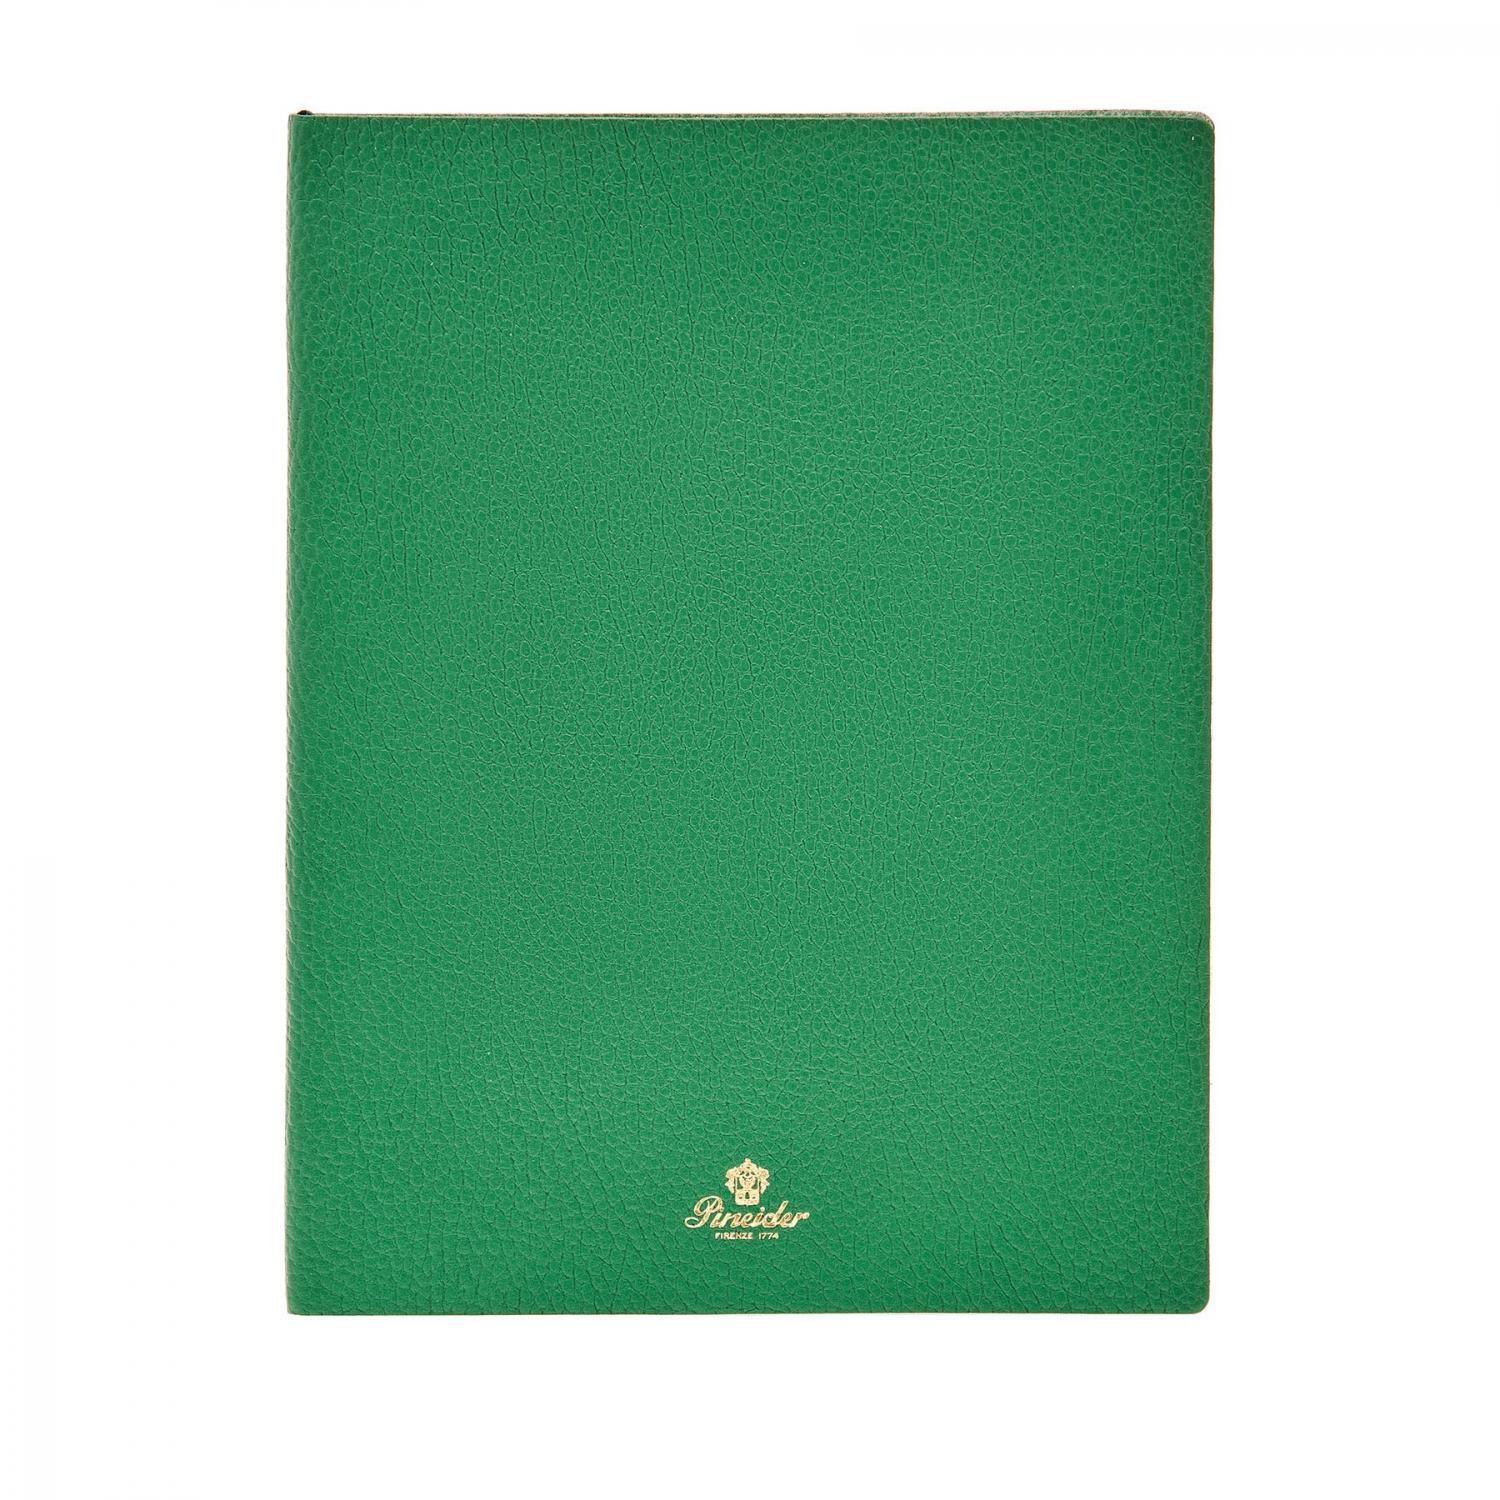 Notebook Pensieri 19x25 cm